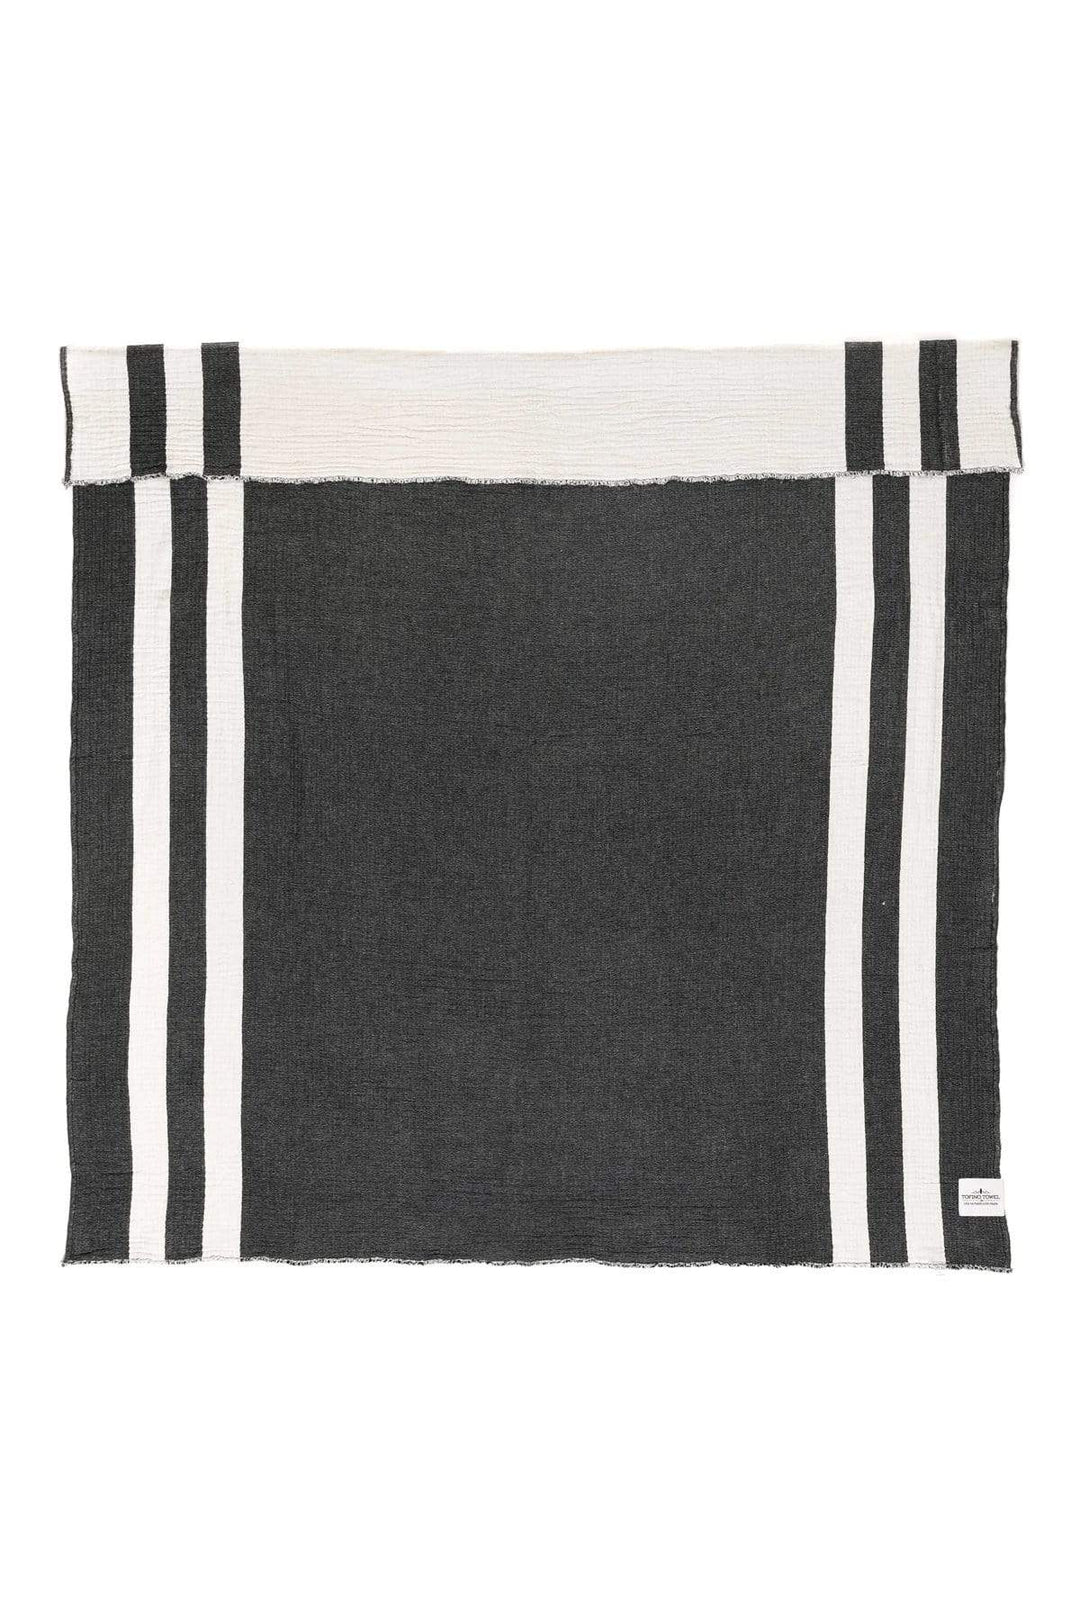 Tofino Towels Black Aria Throw Series